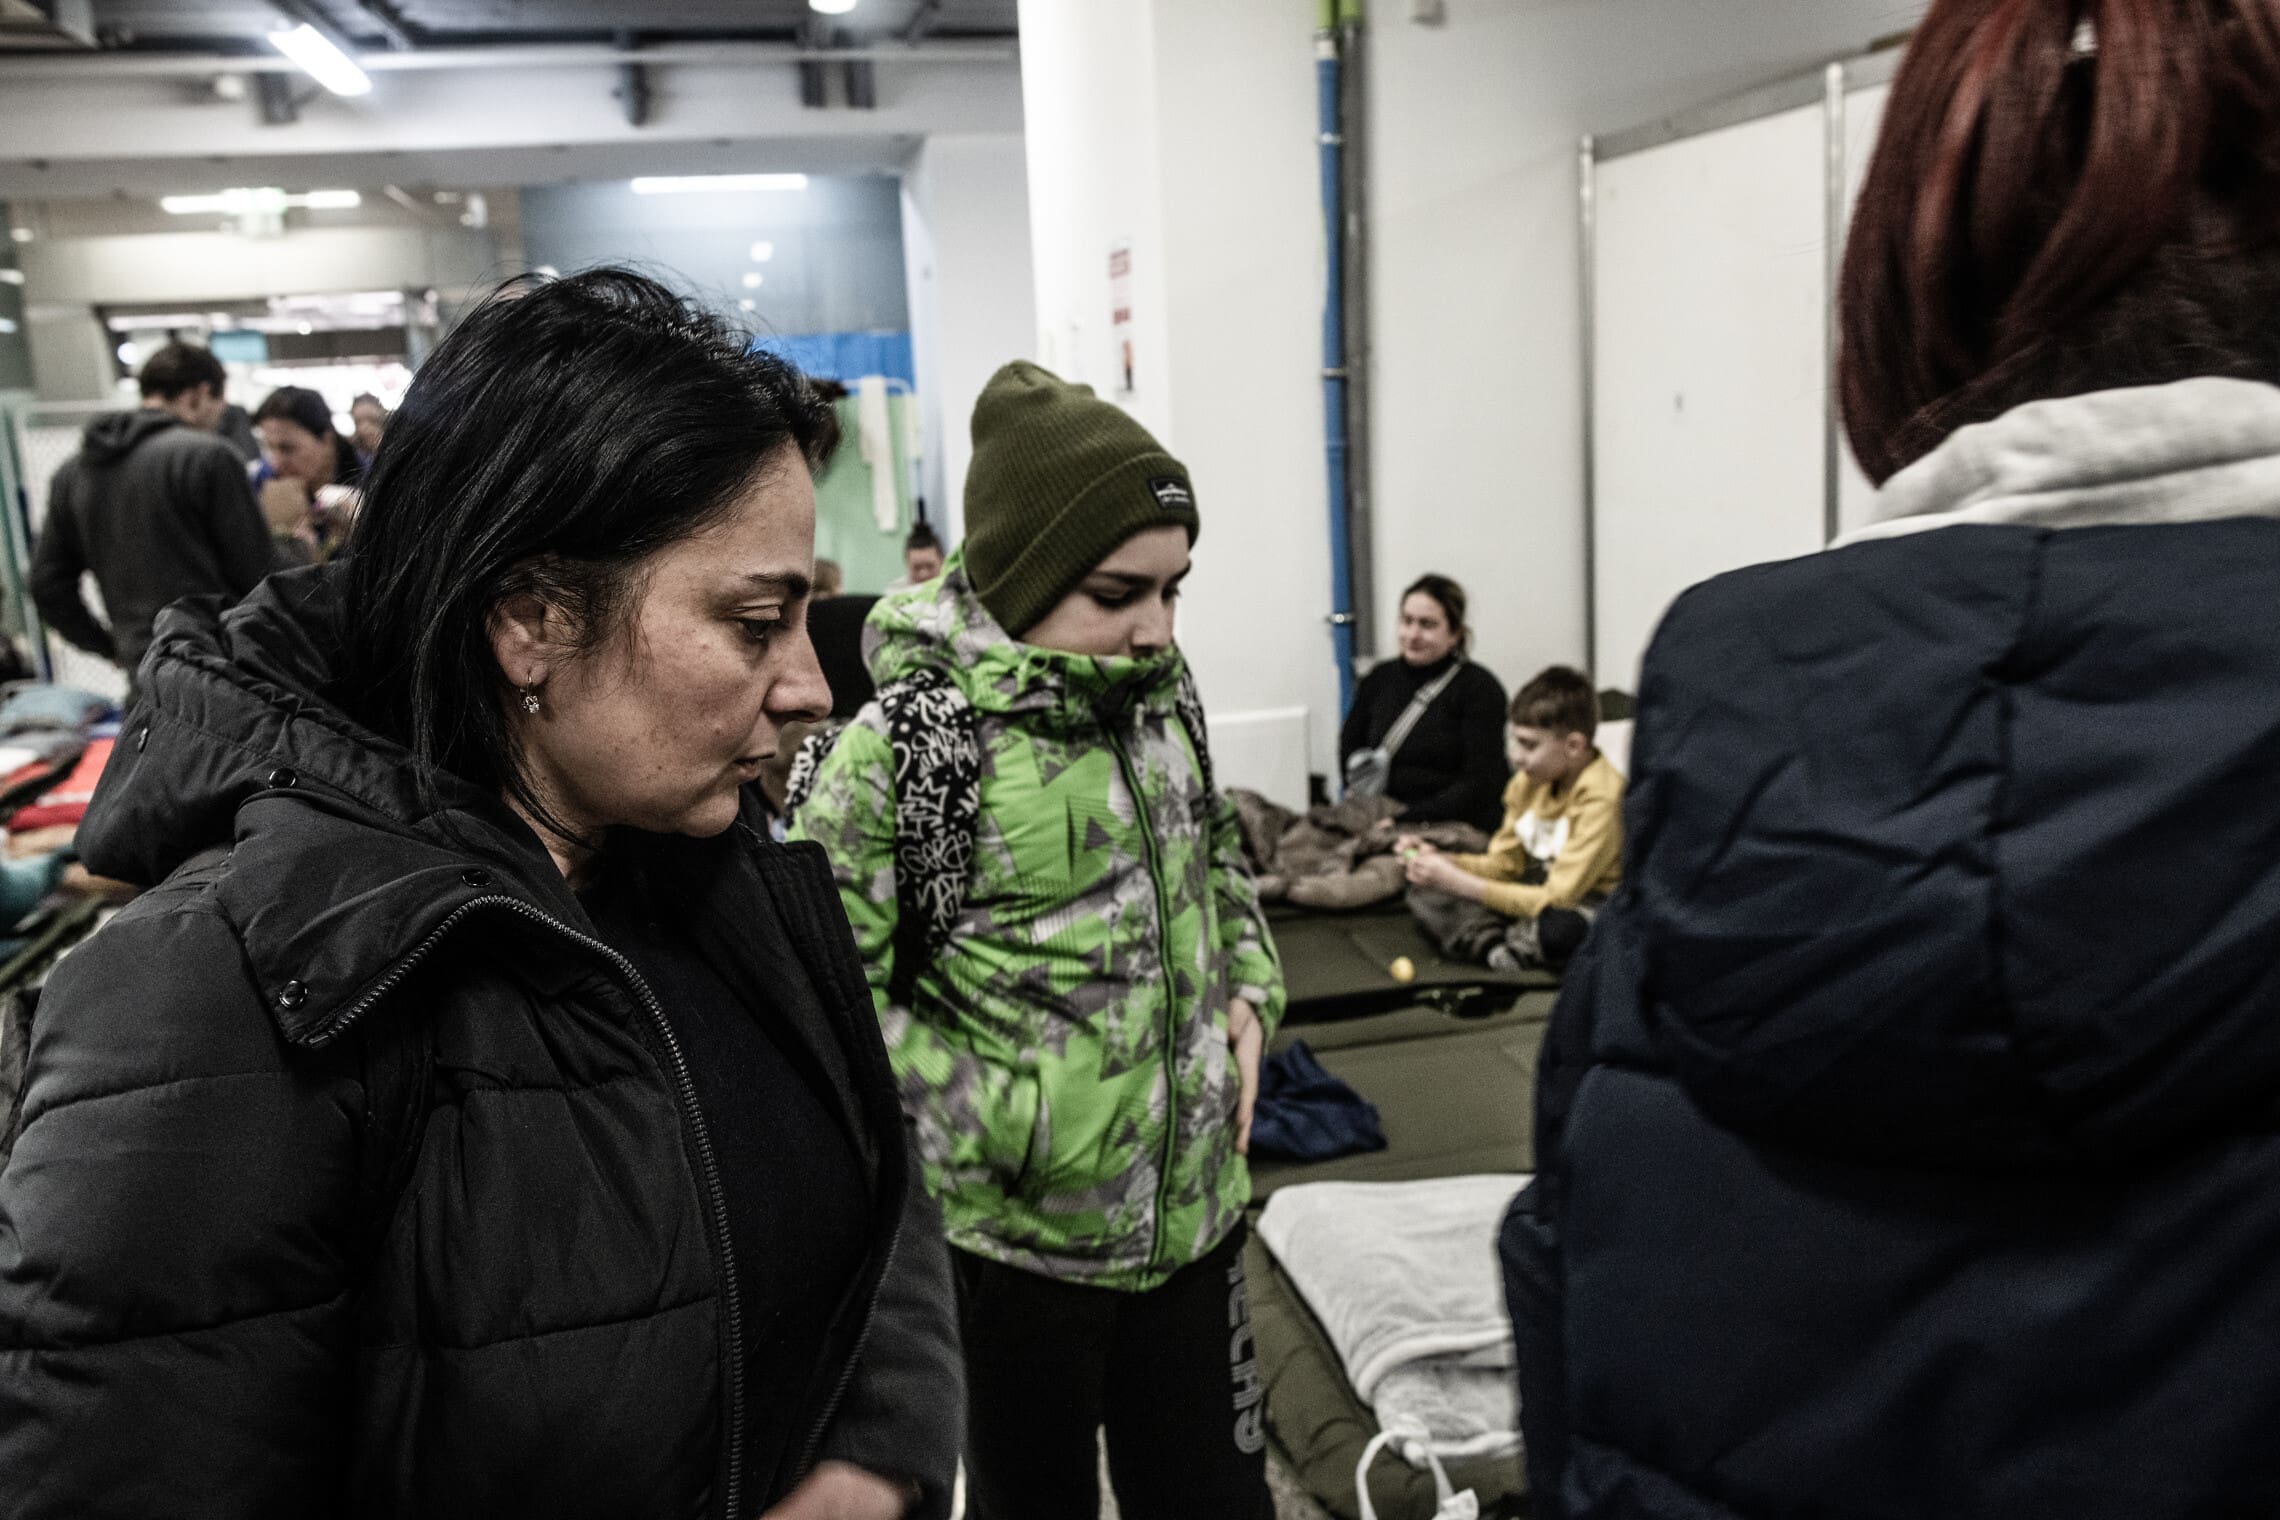 אנוש וילדיה רגע לפני שהם עוזבים את מתחם הלינה בתחנת הרכבת המרכזית בעיר קרקוב, מרץ 2022 (צילום: גילעד שדה)